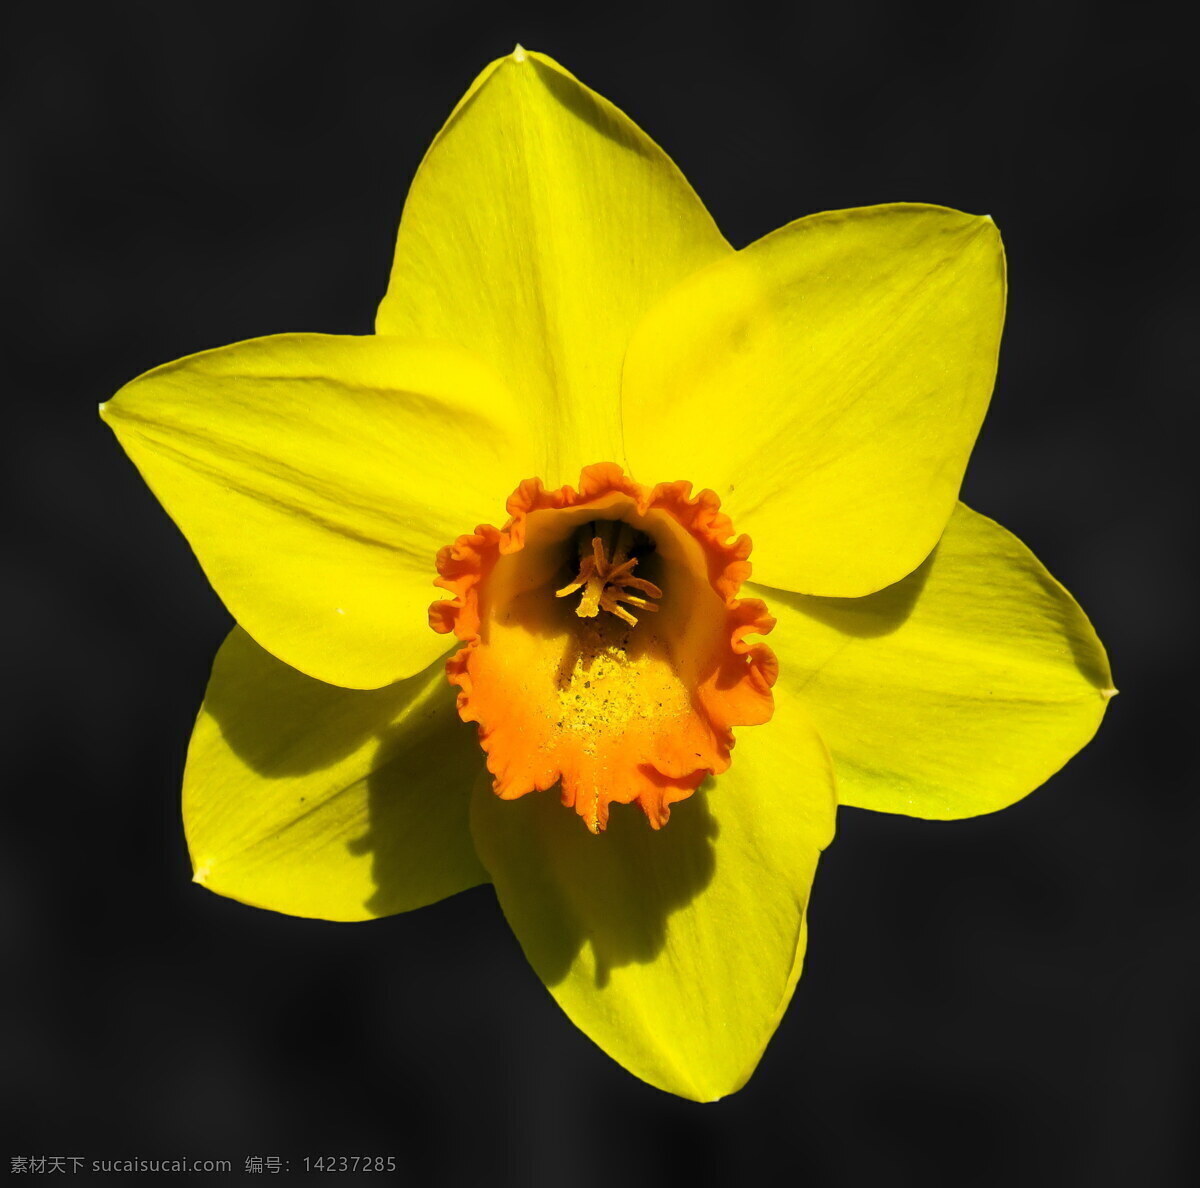 唯美 黄水 仙花 黄色 喇叭水仙花 黄花 黄色花朵 鲜花